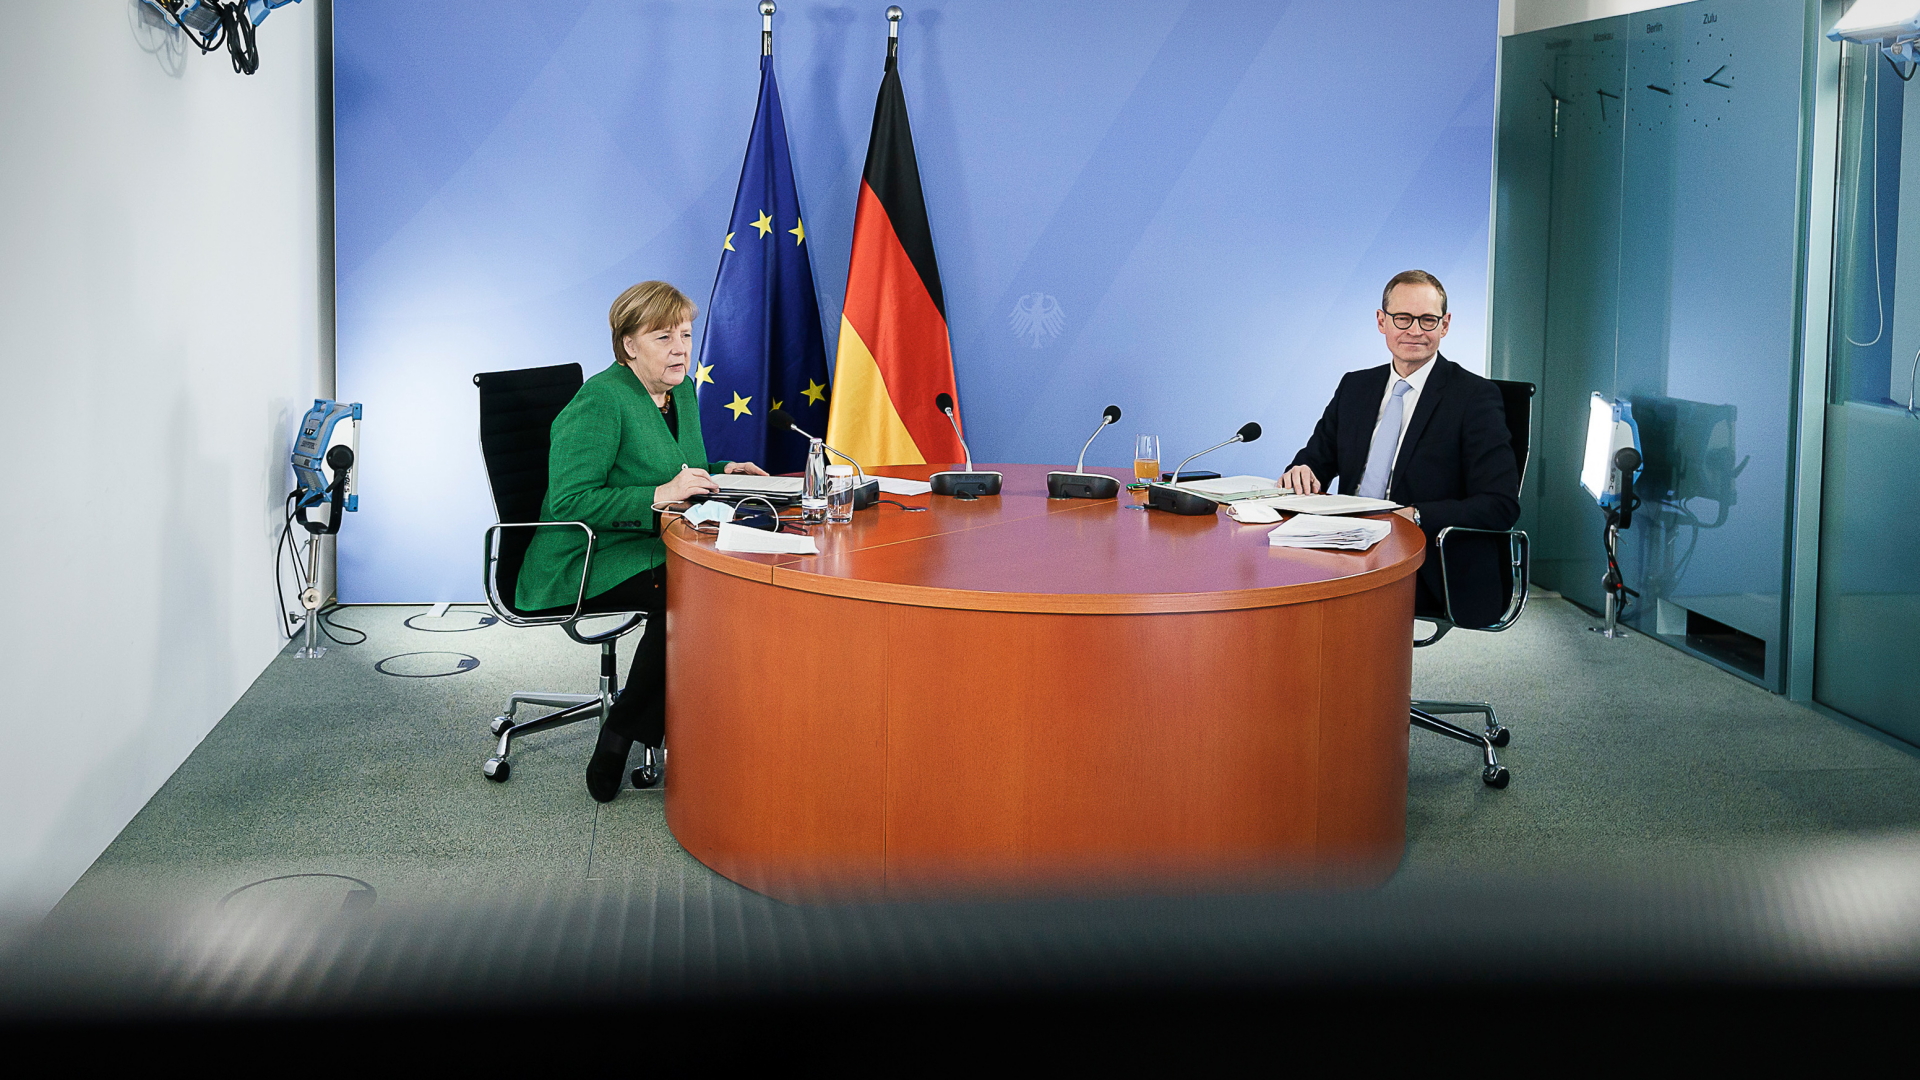 Bundeskanzlerin Angela Merkel (CDU) und Michael Müller (SPD), Regierender Bürgermeister von Berlin, sitzen zusammen während einer Videokonferenz mit den Ministerpräsidenten der Länder zum weiteren Vorgehen in der Corona-Pandemie. | dpa